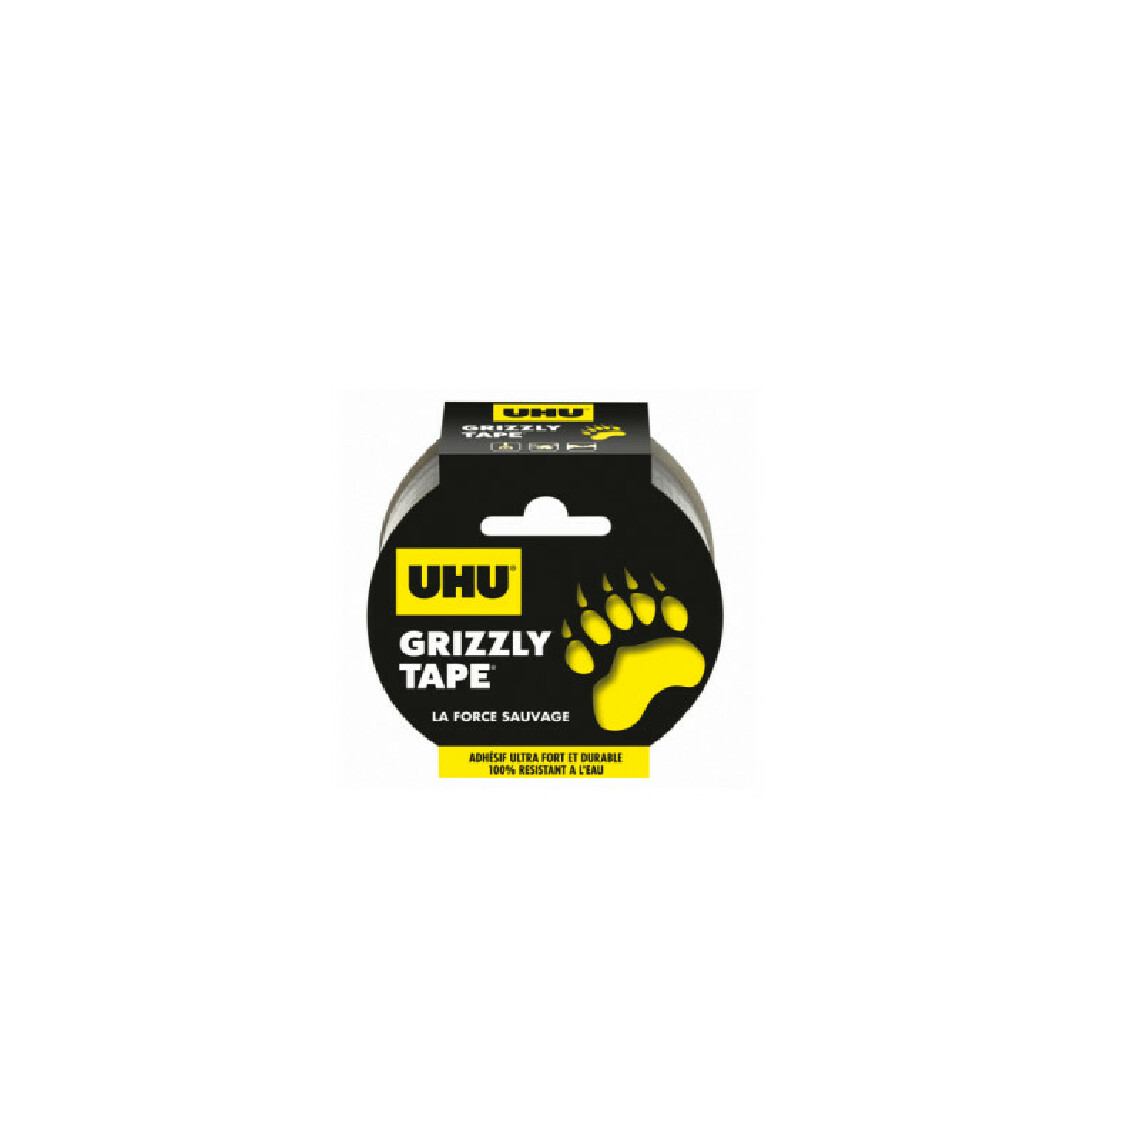 Uhu - Ruban de réparation UHU Grizzly Tape Gris - 10m - 35720 - Adhésif d'emballage